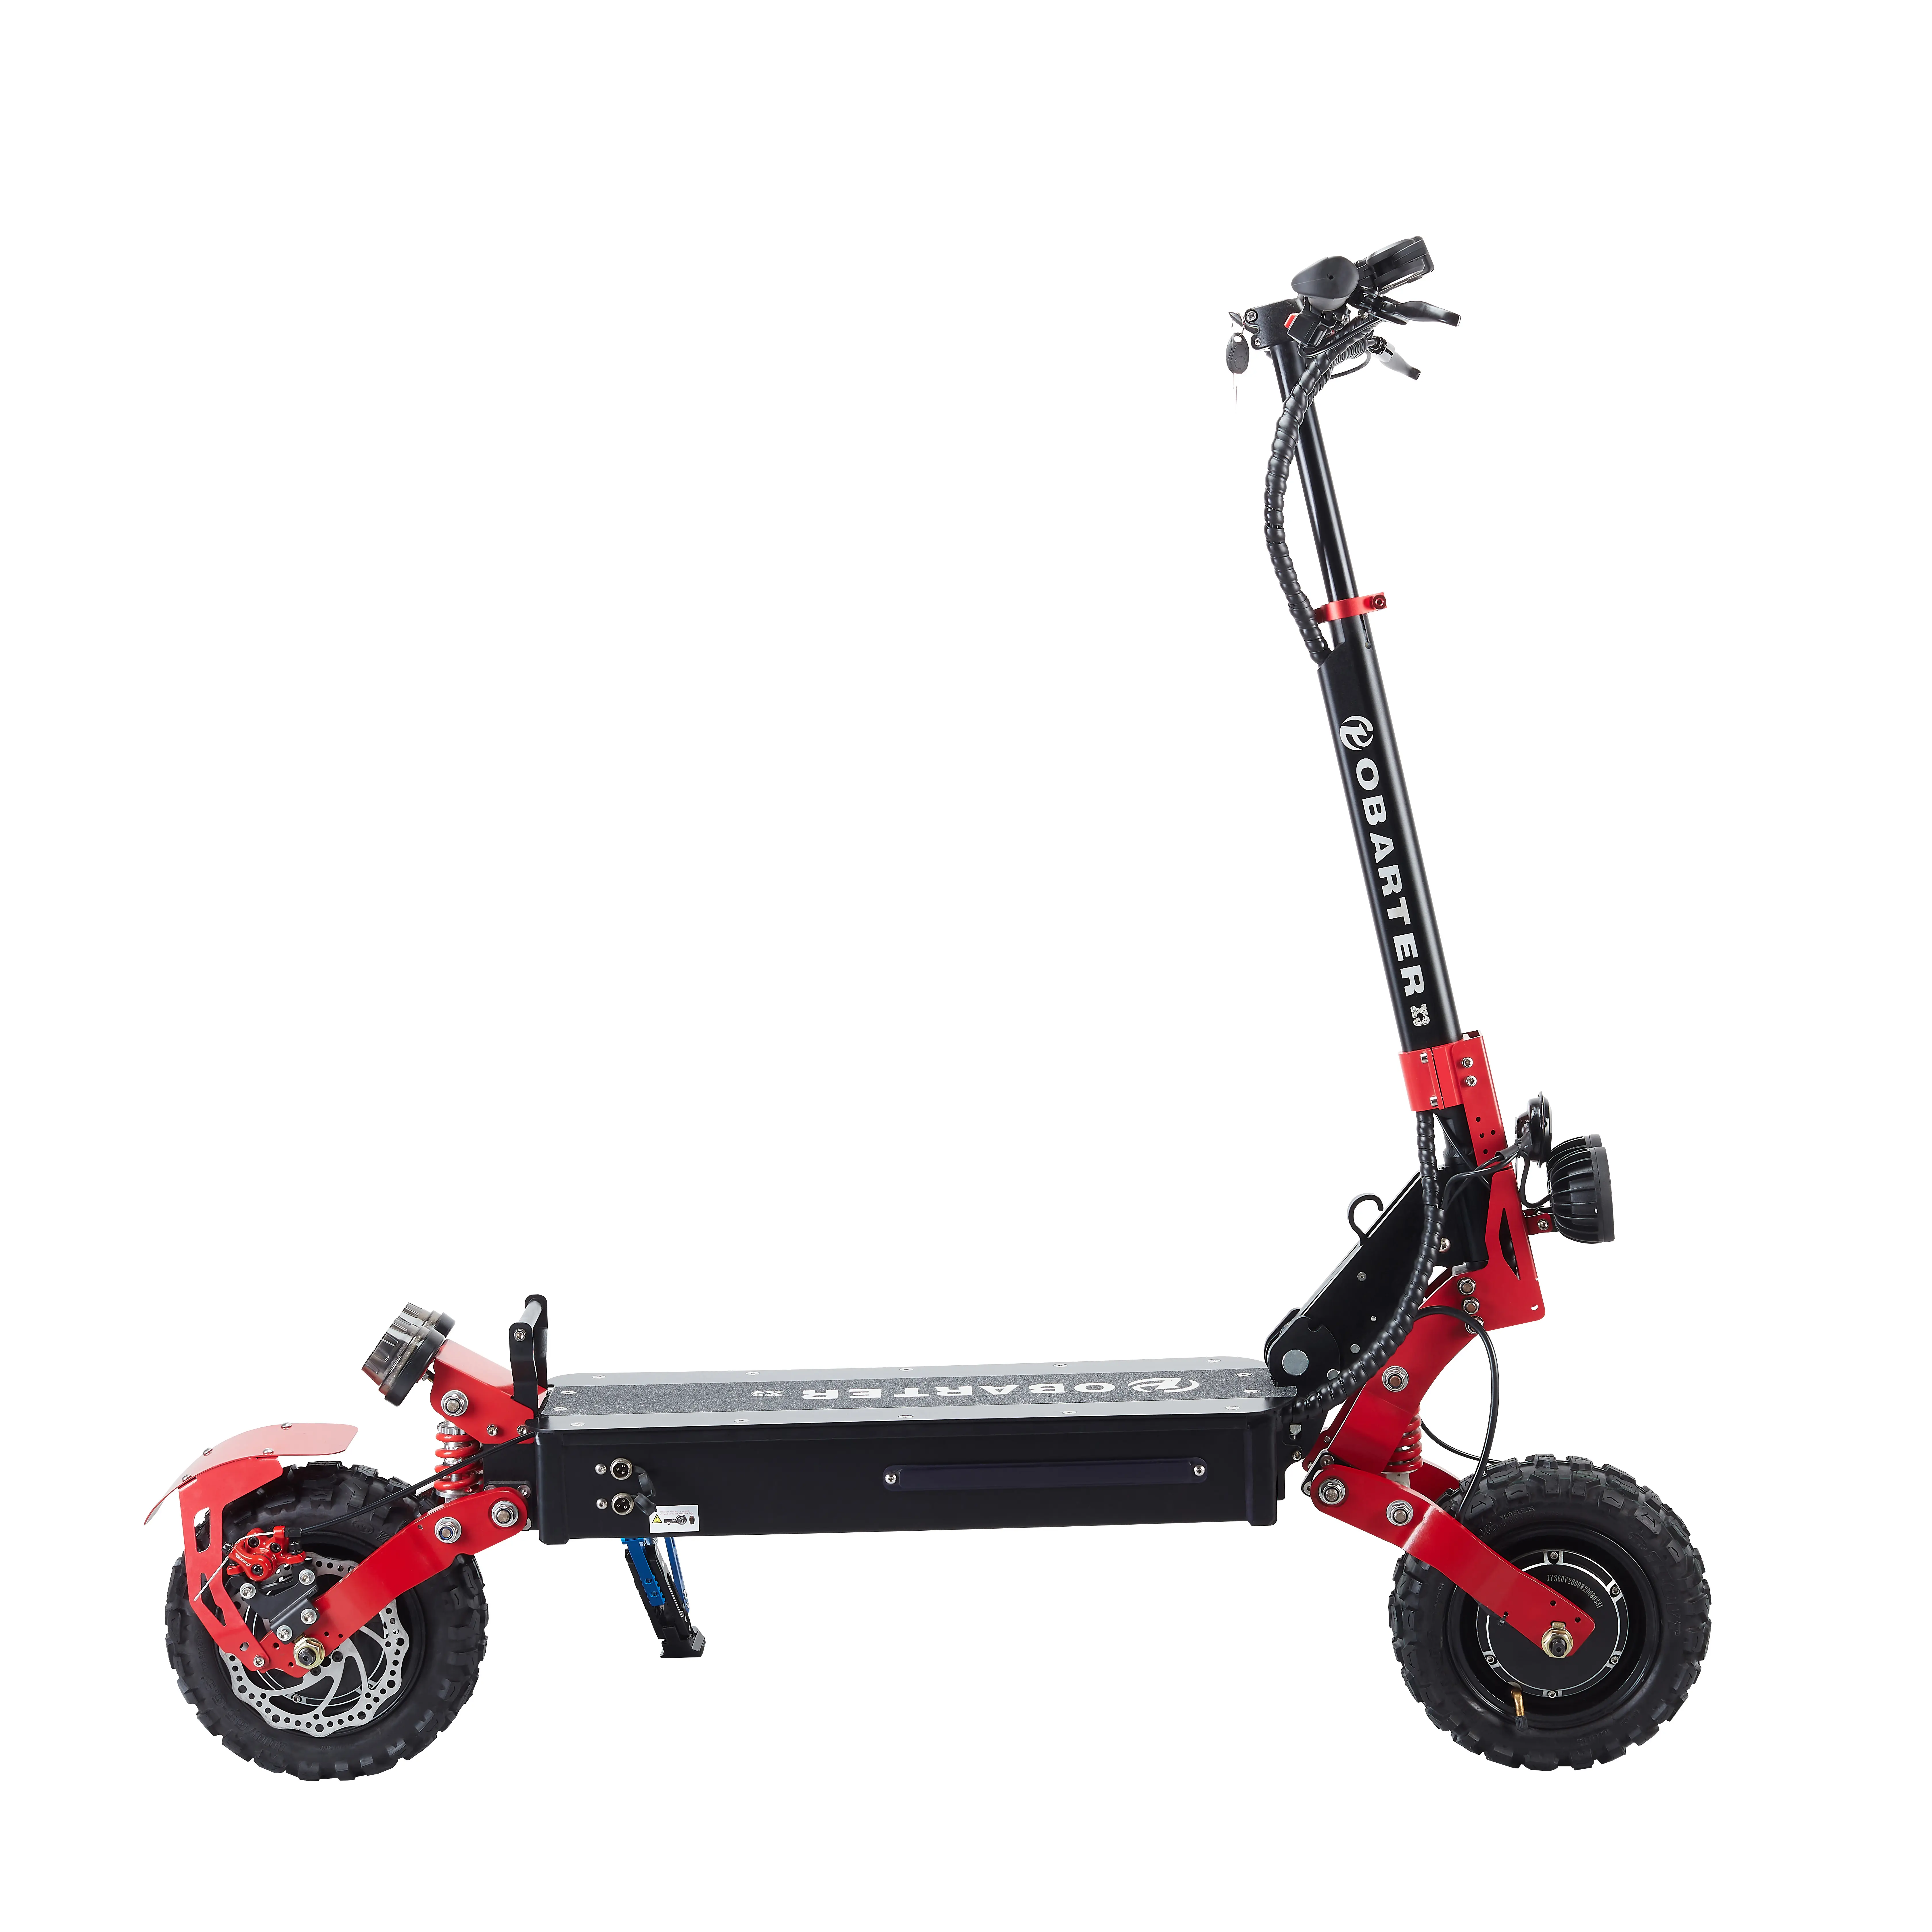 Scooter elétrico dobrável de alta velocidade com pneu gordo de 11" para rodas grandes, 48V, 20Ah, motor duplo, 2400W